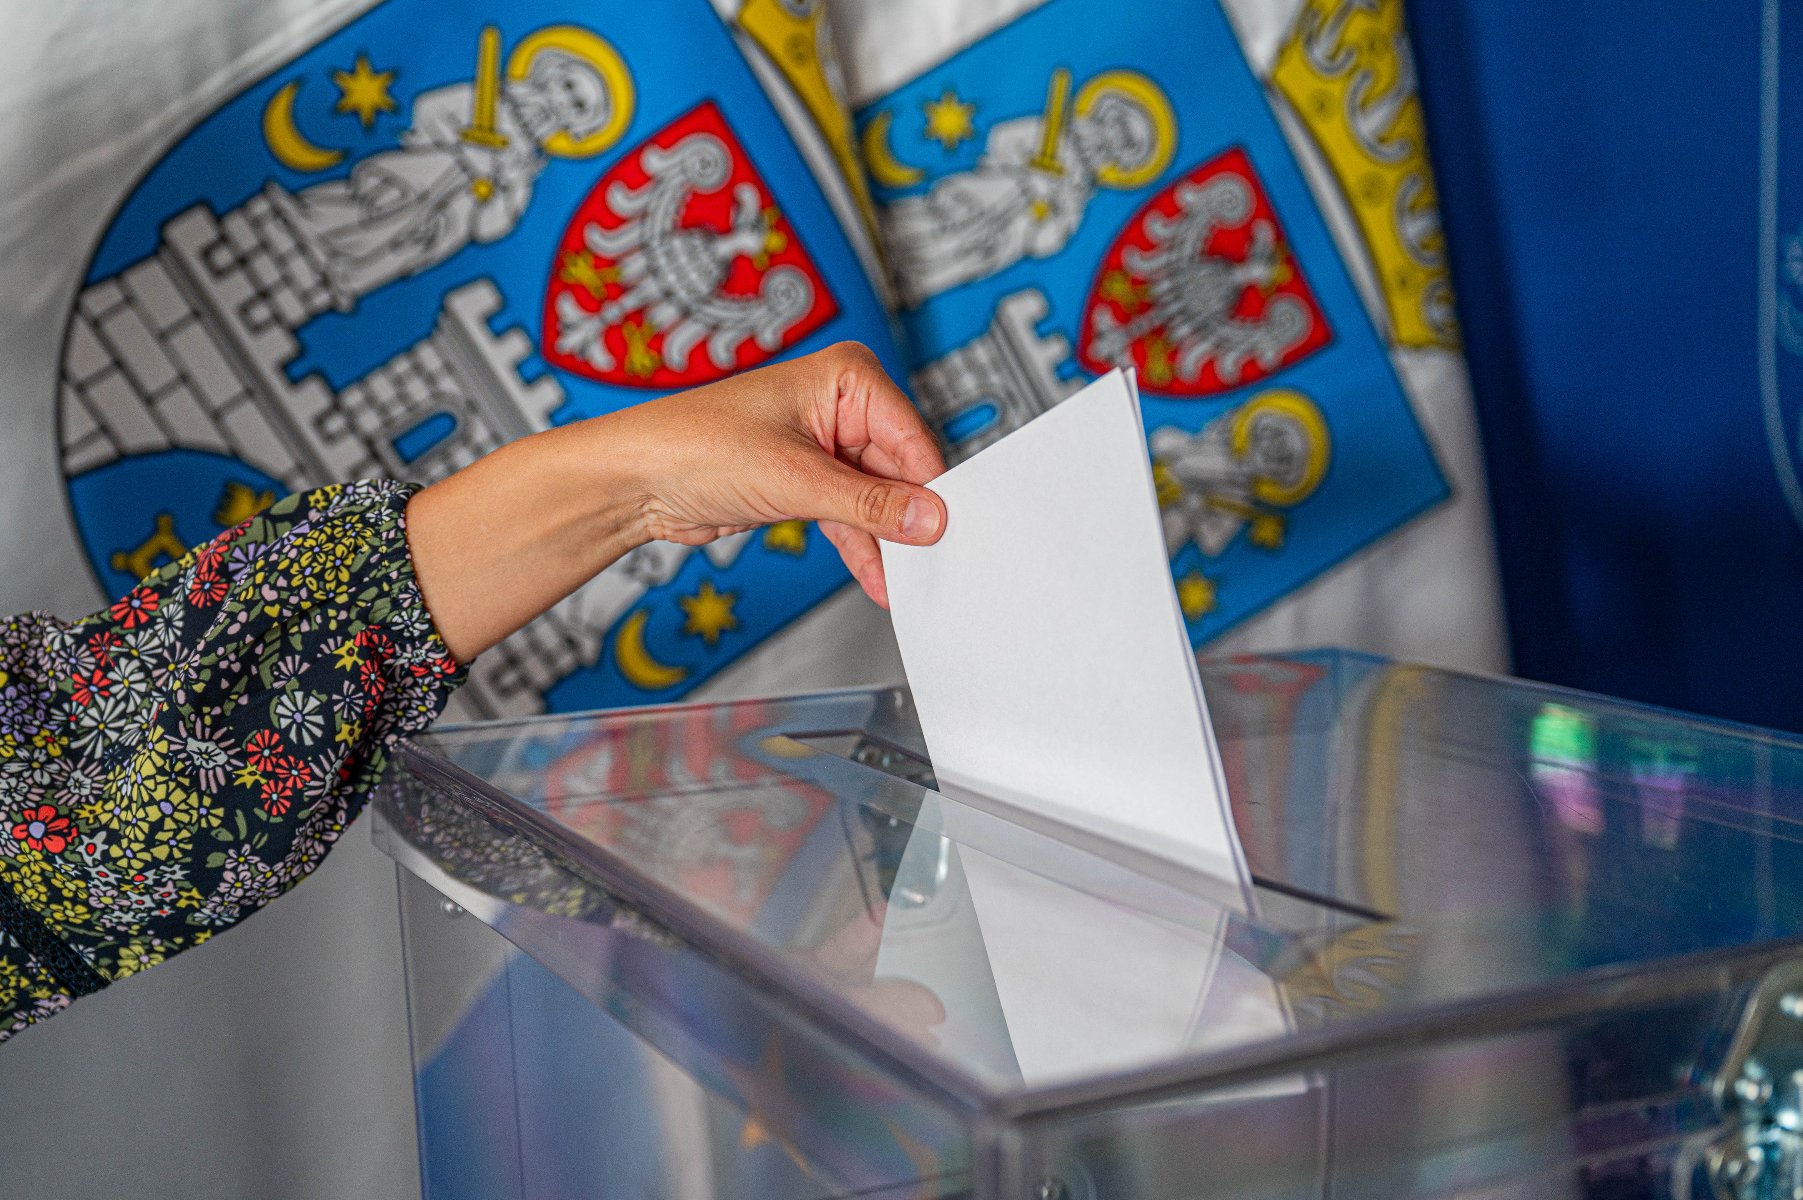 Zdjęcie przedstawia rękę wrzucającą kartę do głosowania do urny wyborczej. W tle flagi z herbem Miasta Poznania. - grafika artykułu